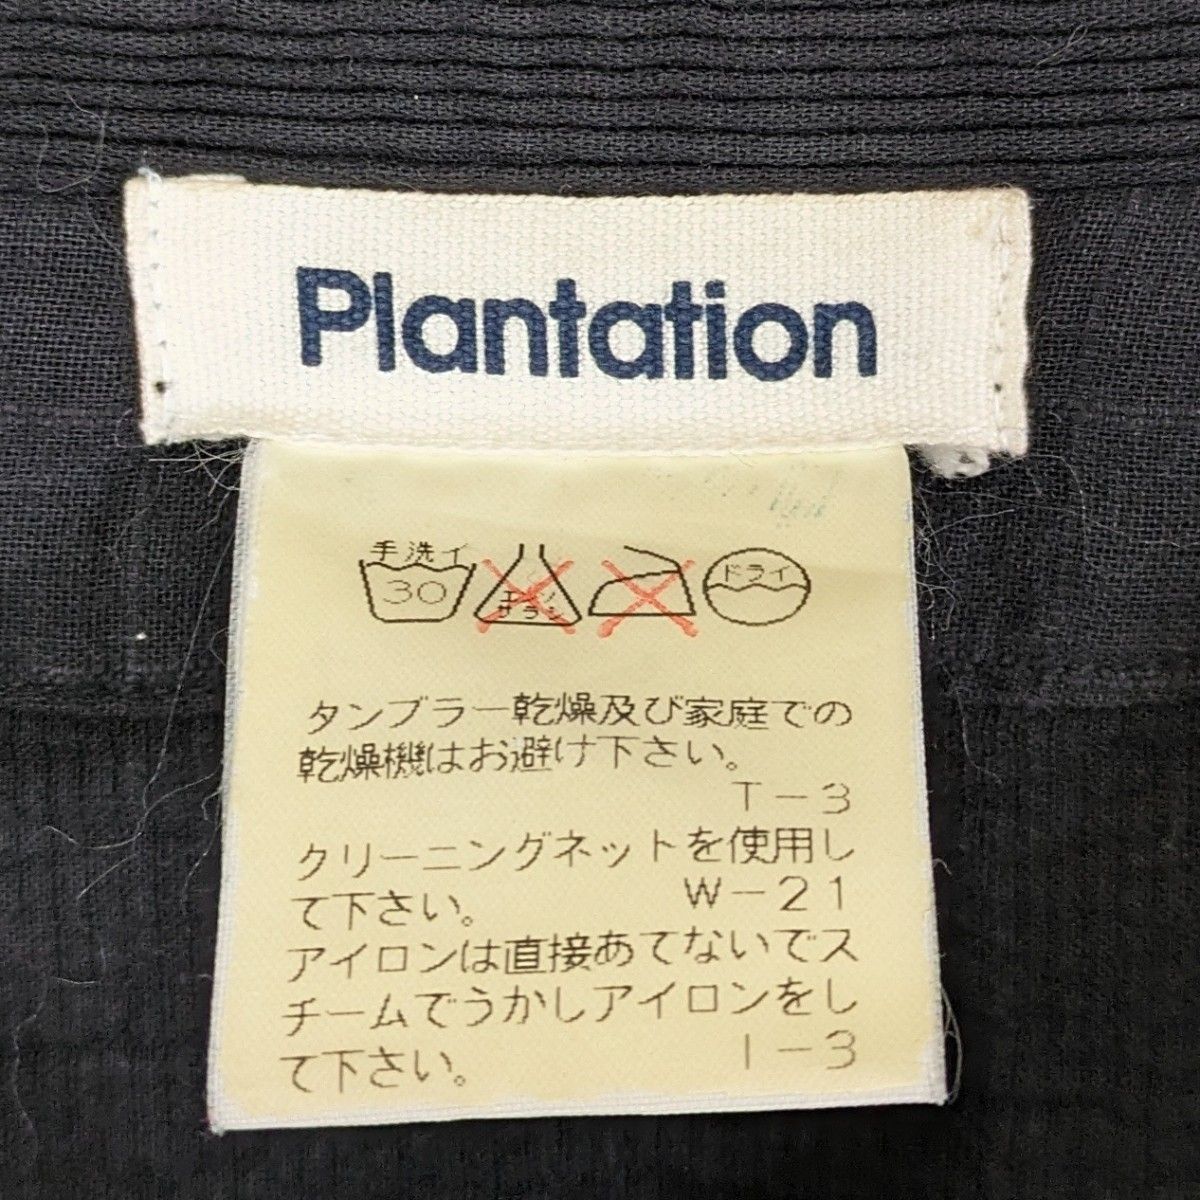 ★ Plantation プランテーション ★ マオカラー ジャケット 